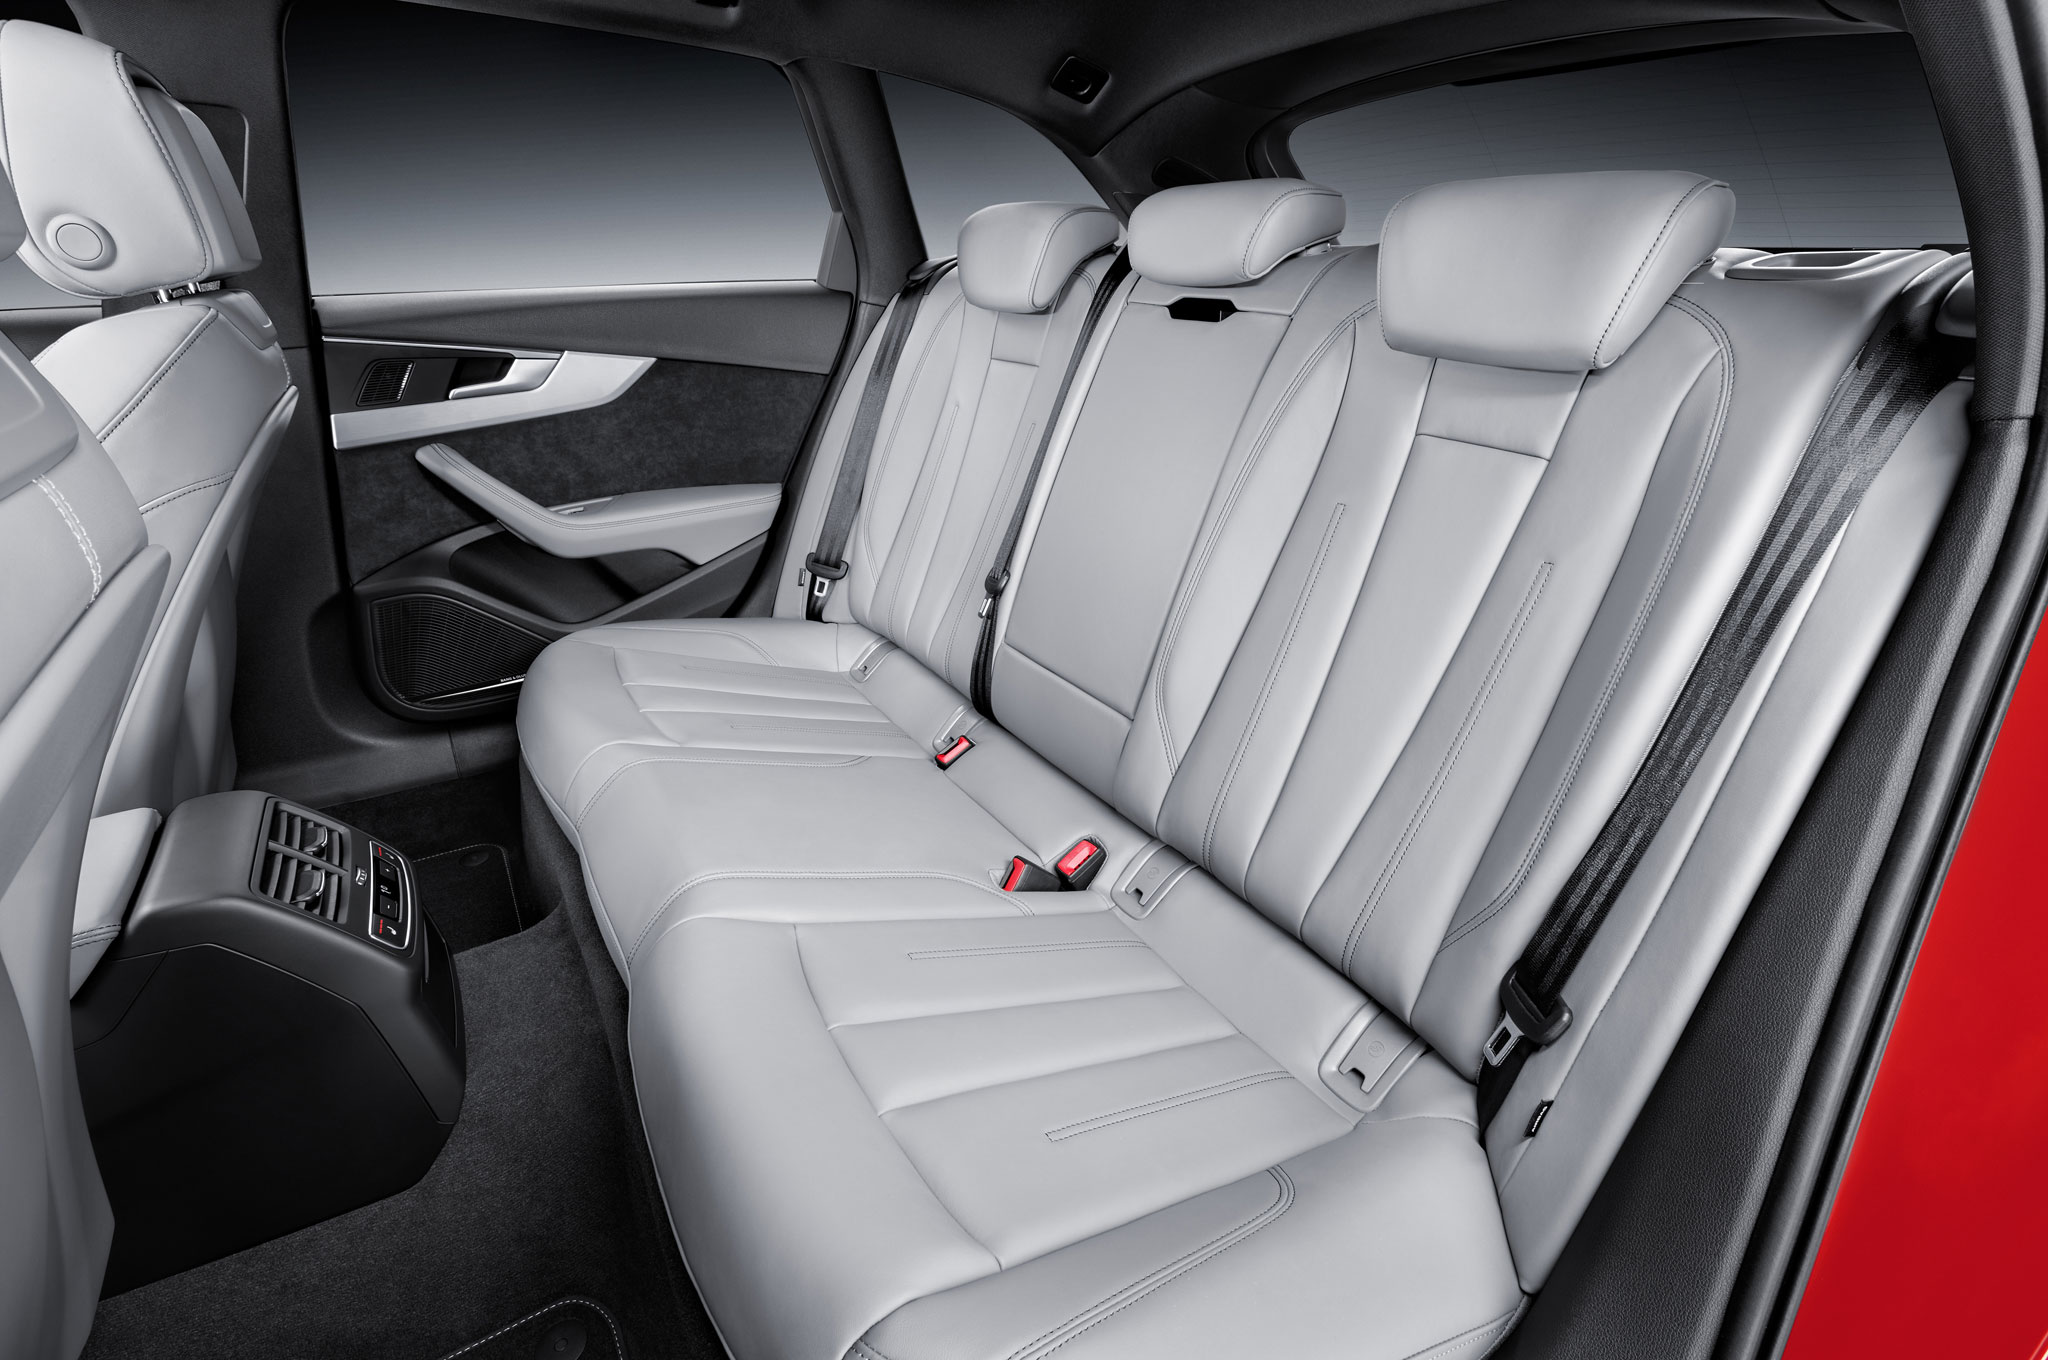 2017-Audi-A4-Avant-3-0-TDI-quattro-rear-seat